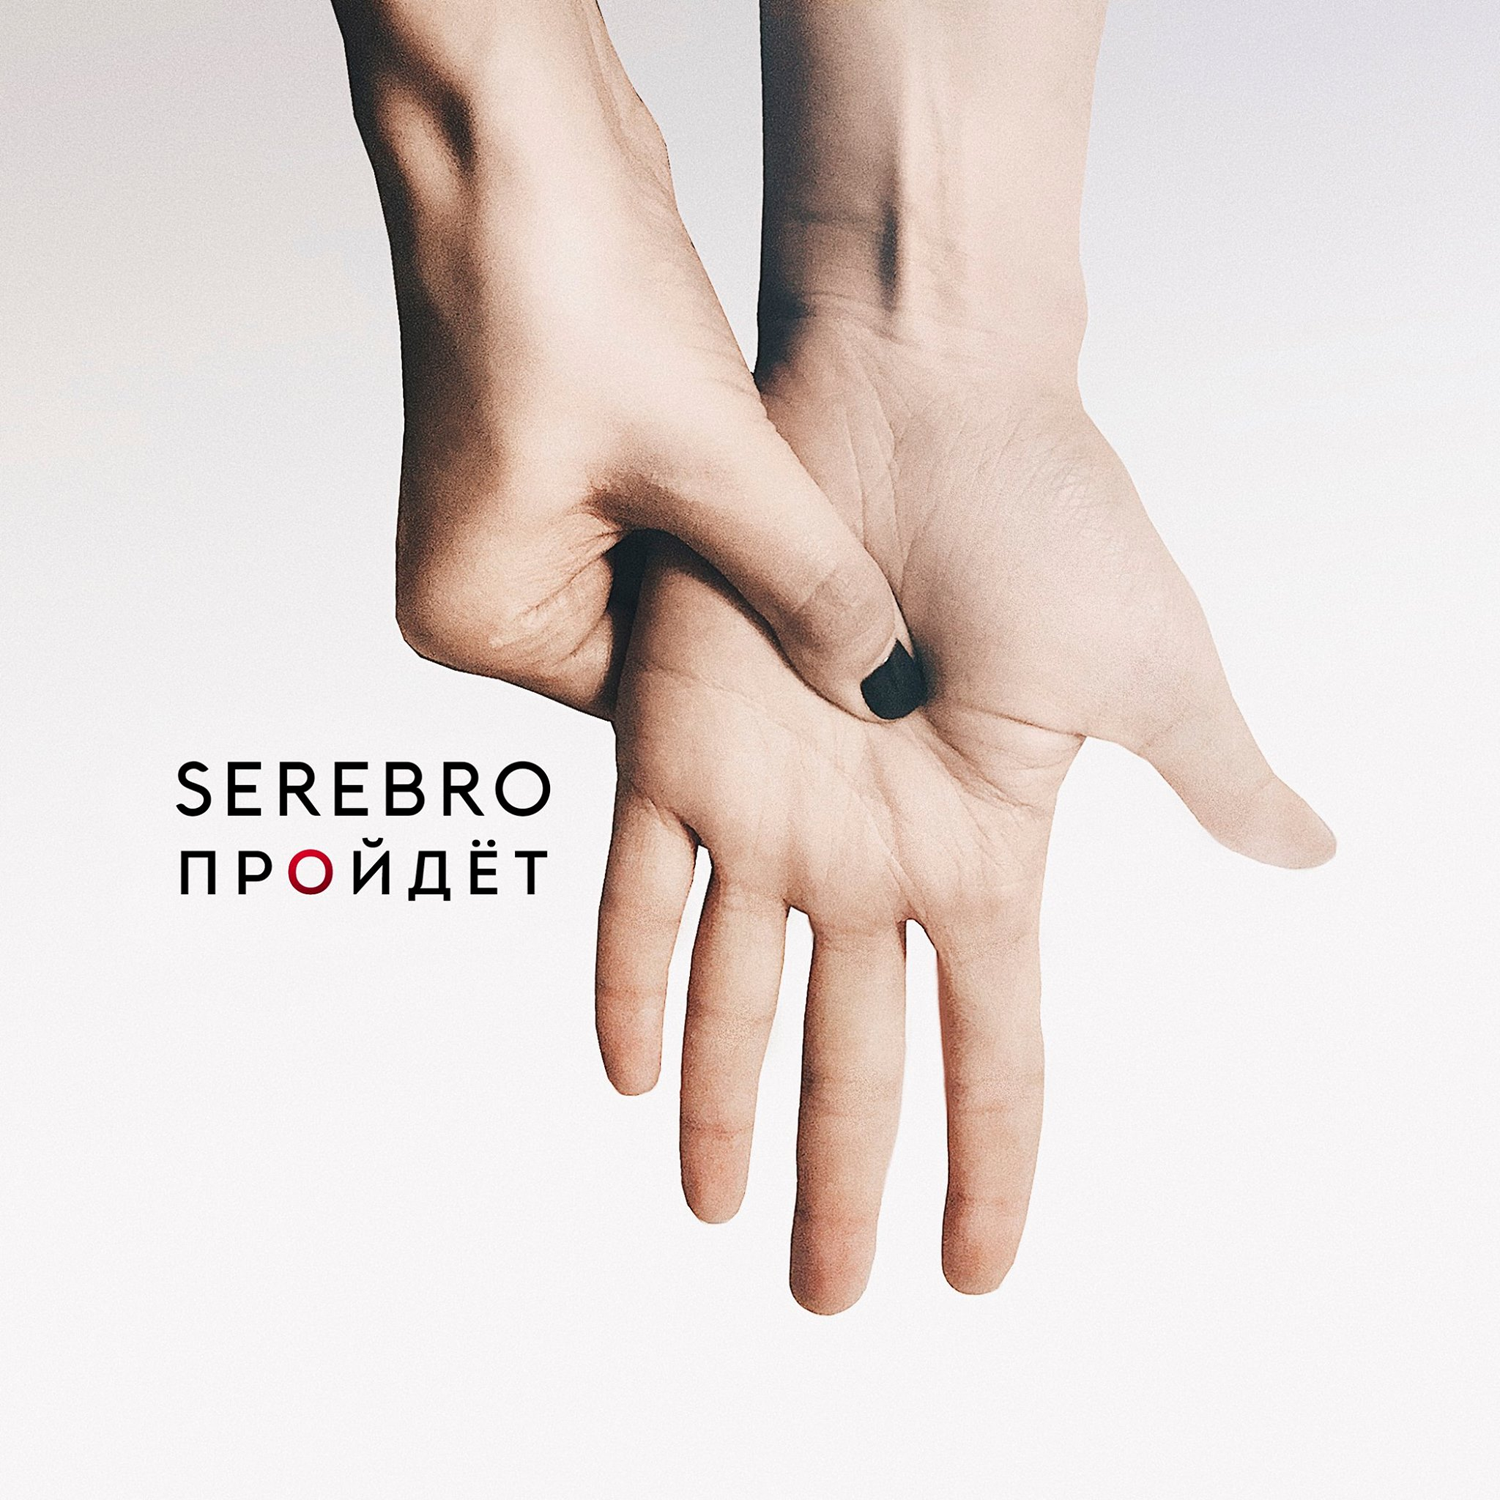 SEREBRO Premiere Delicate New Single “Пройдёт”